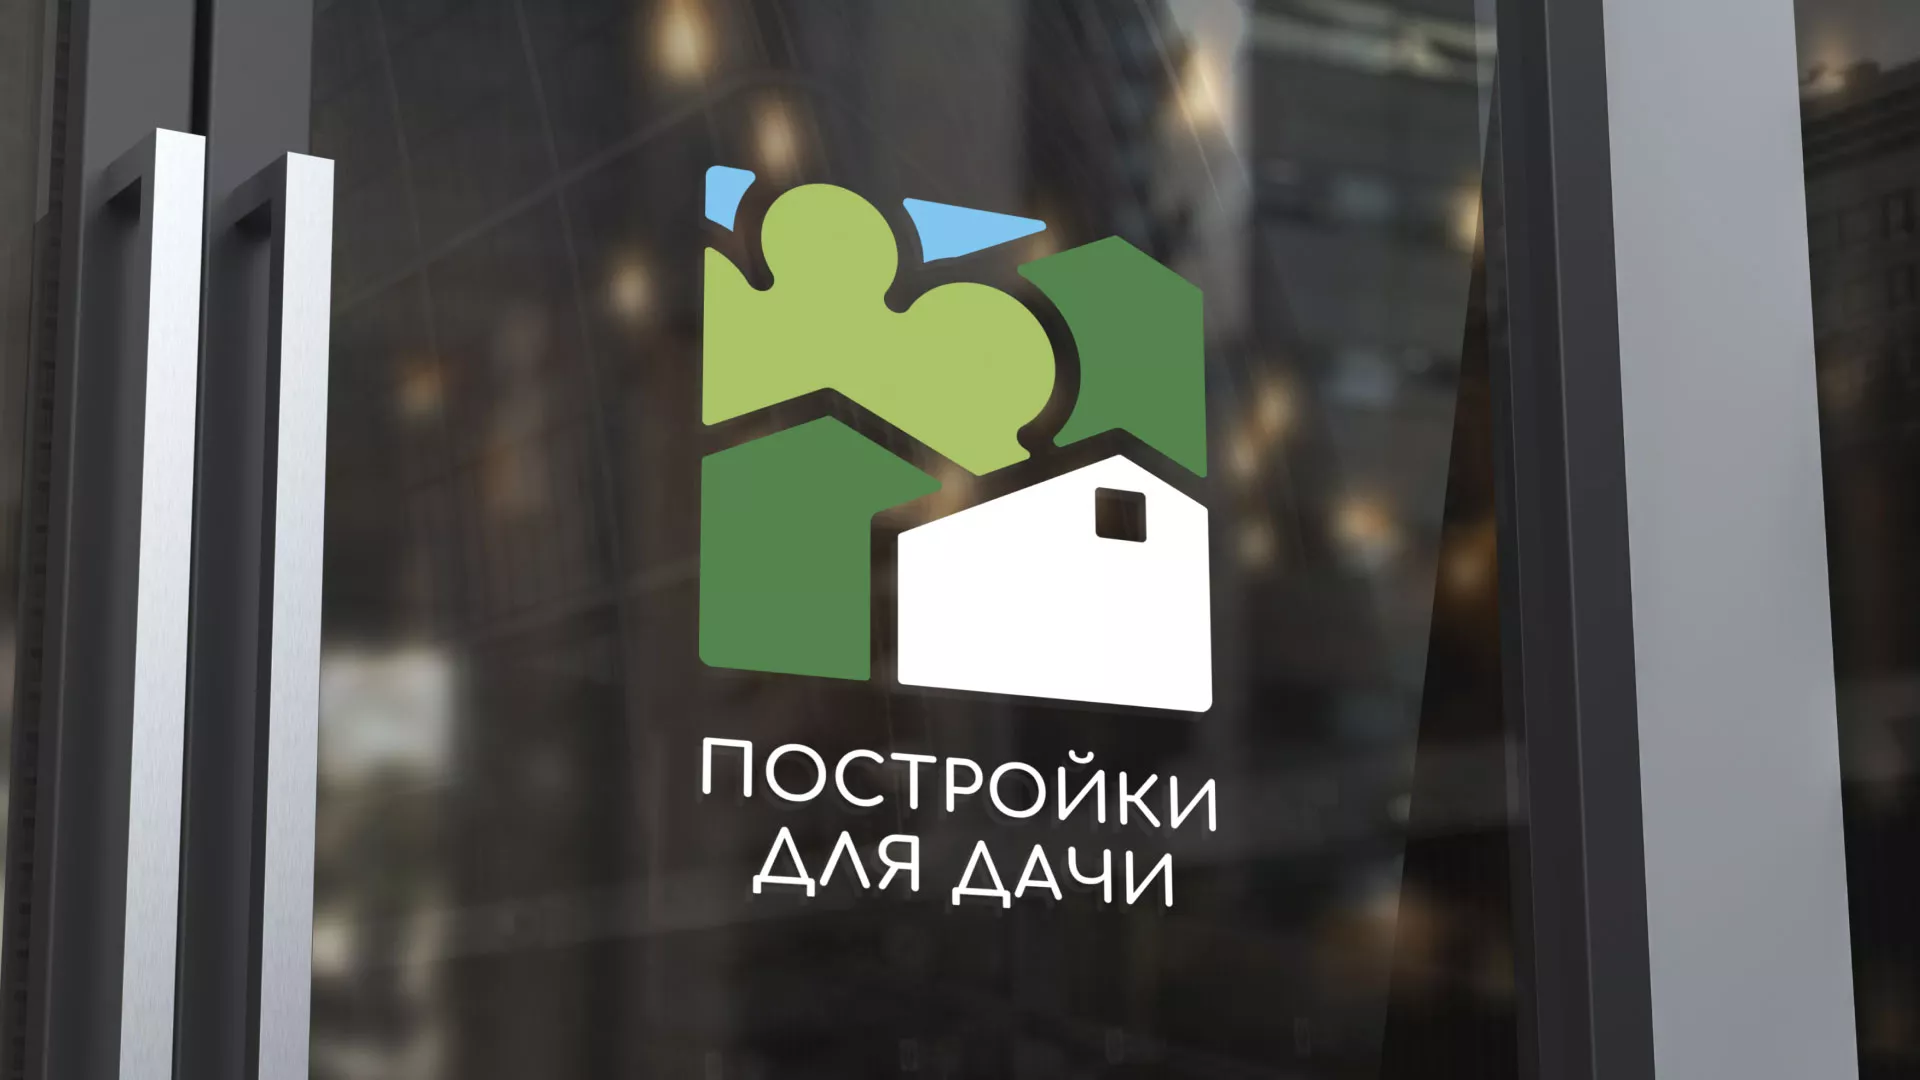 Разработка логотипа в Боброве для компании «Постройки для дачи»